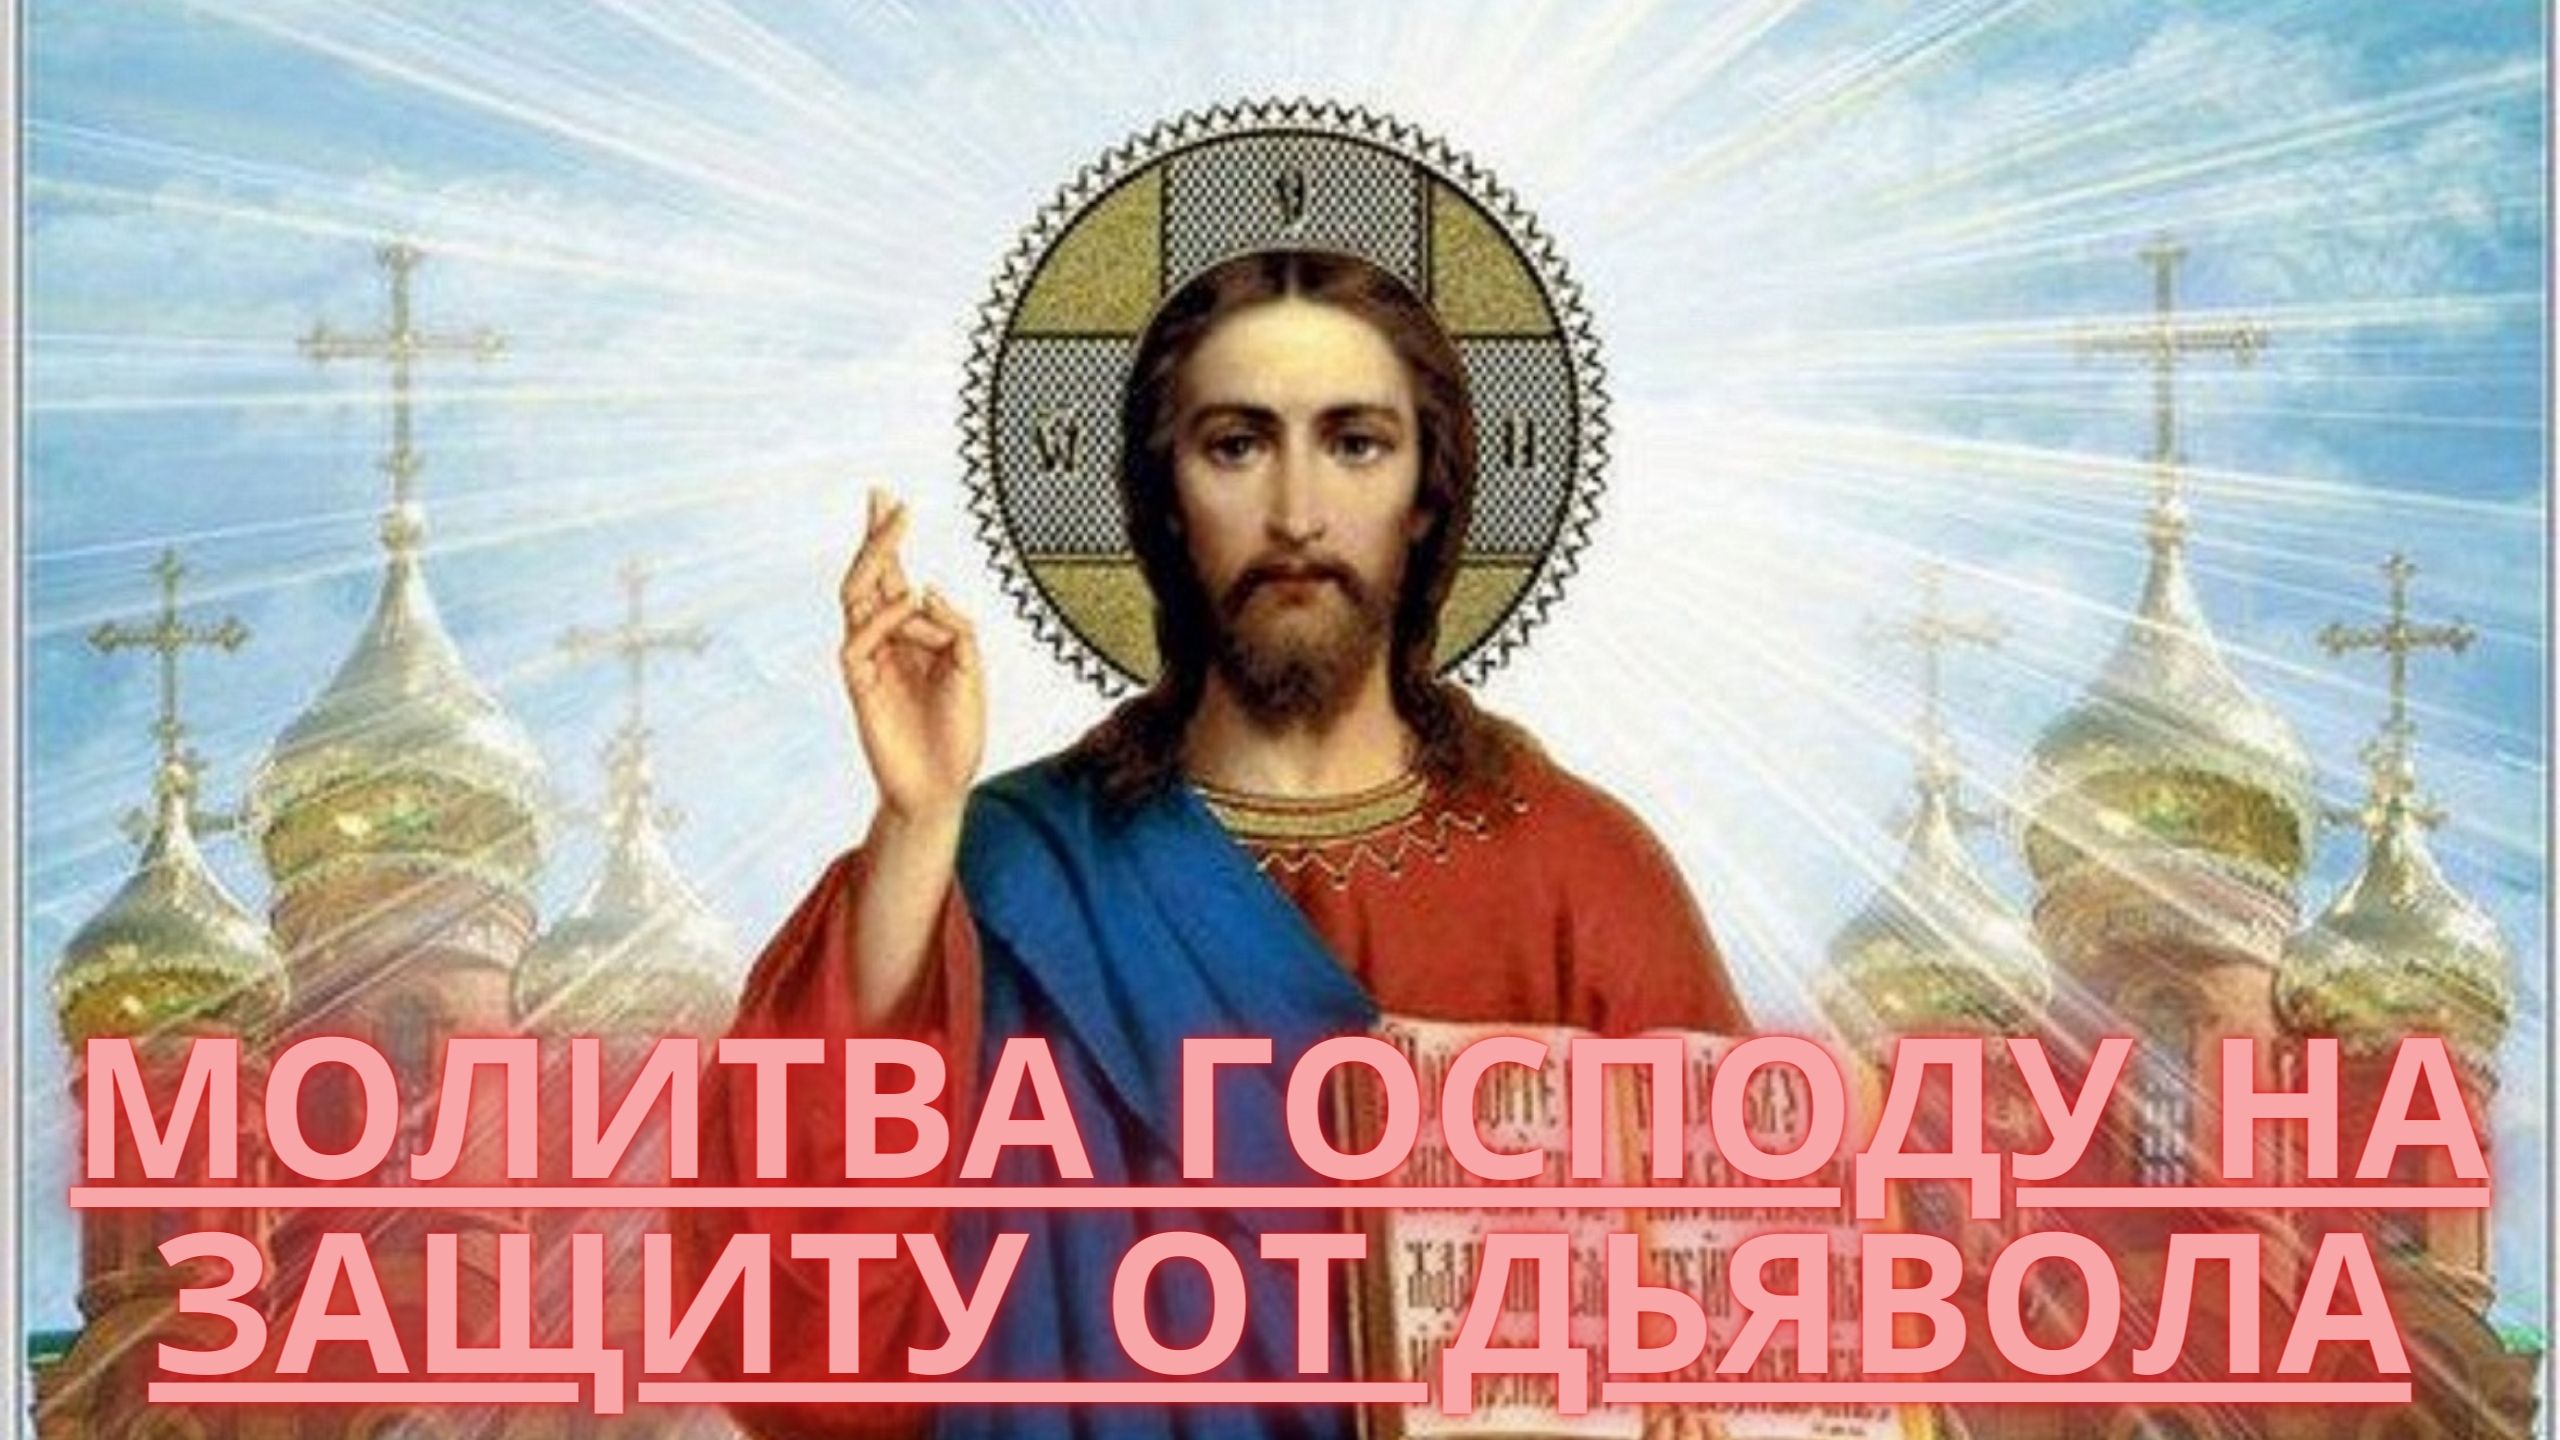 Единый бог россии